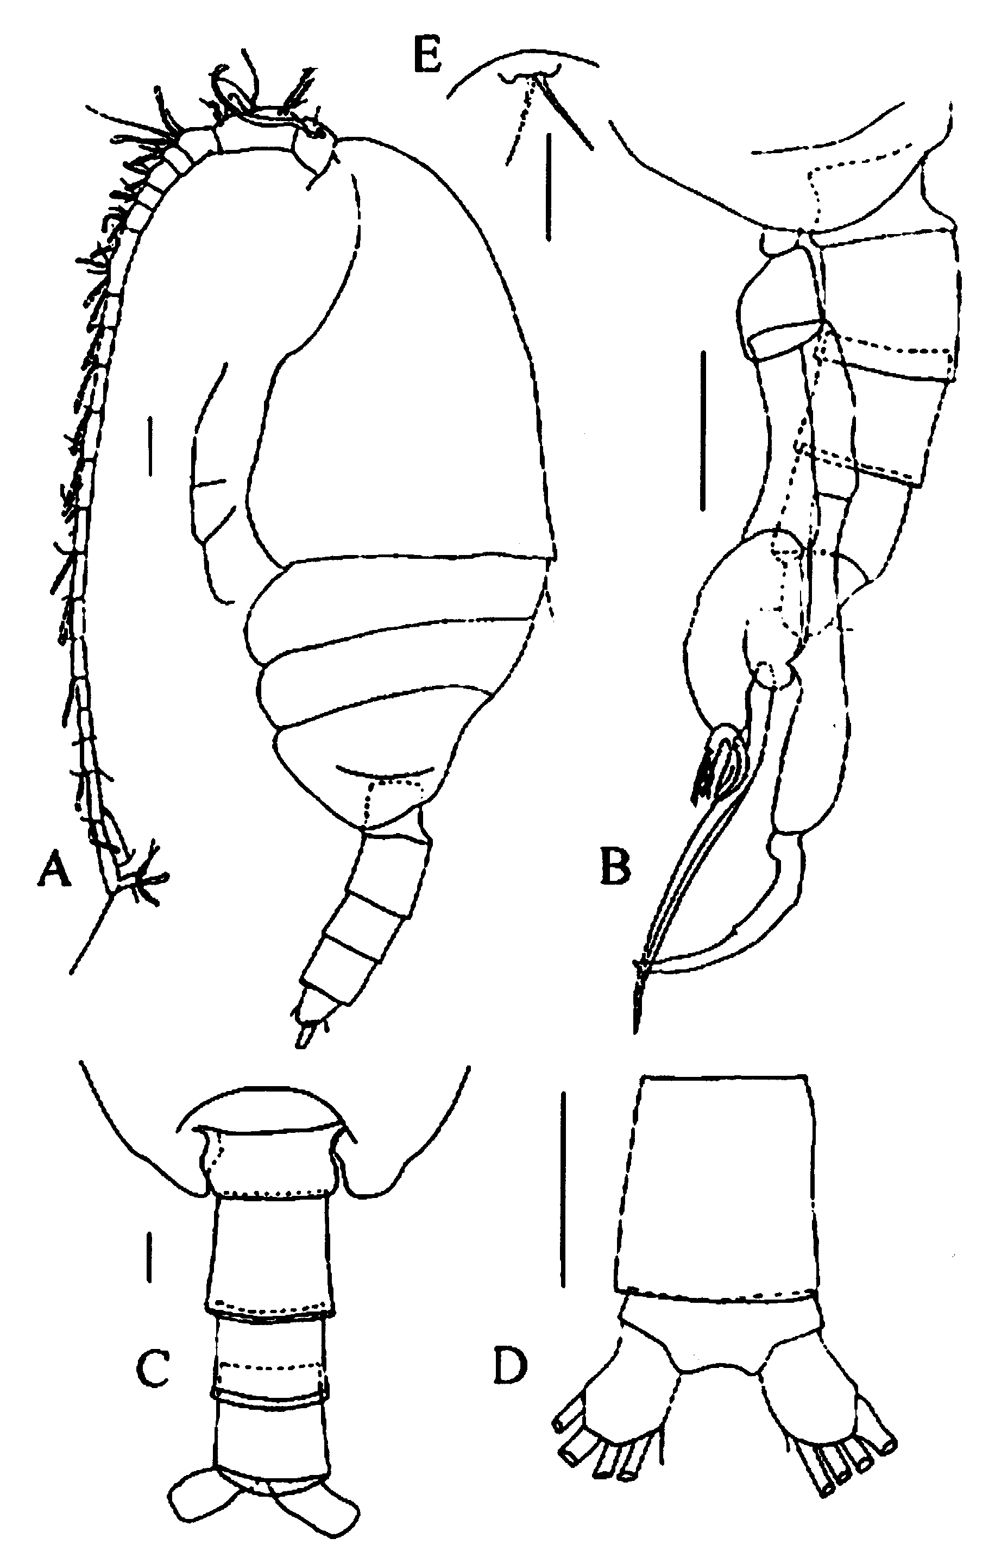 Species Tharybis juhlae - Plate 5 of morphological figures